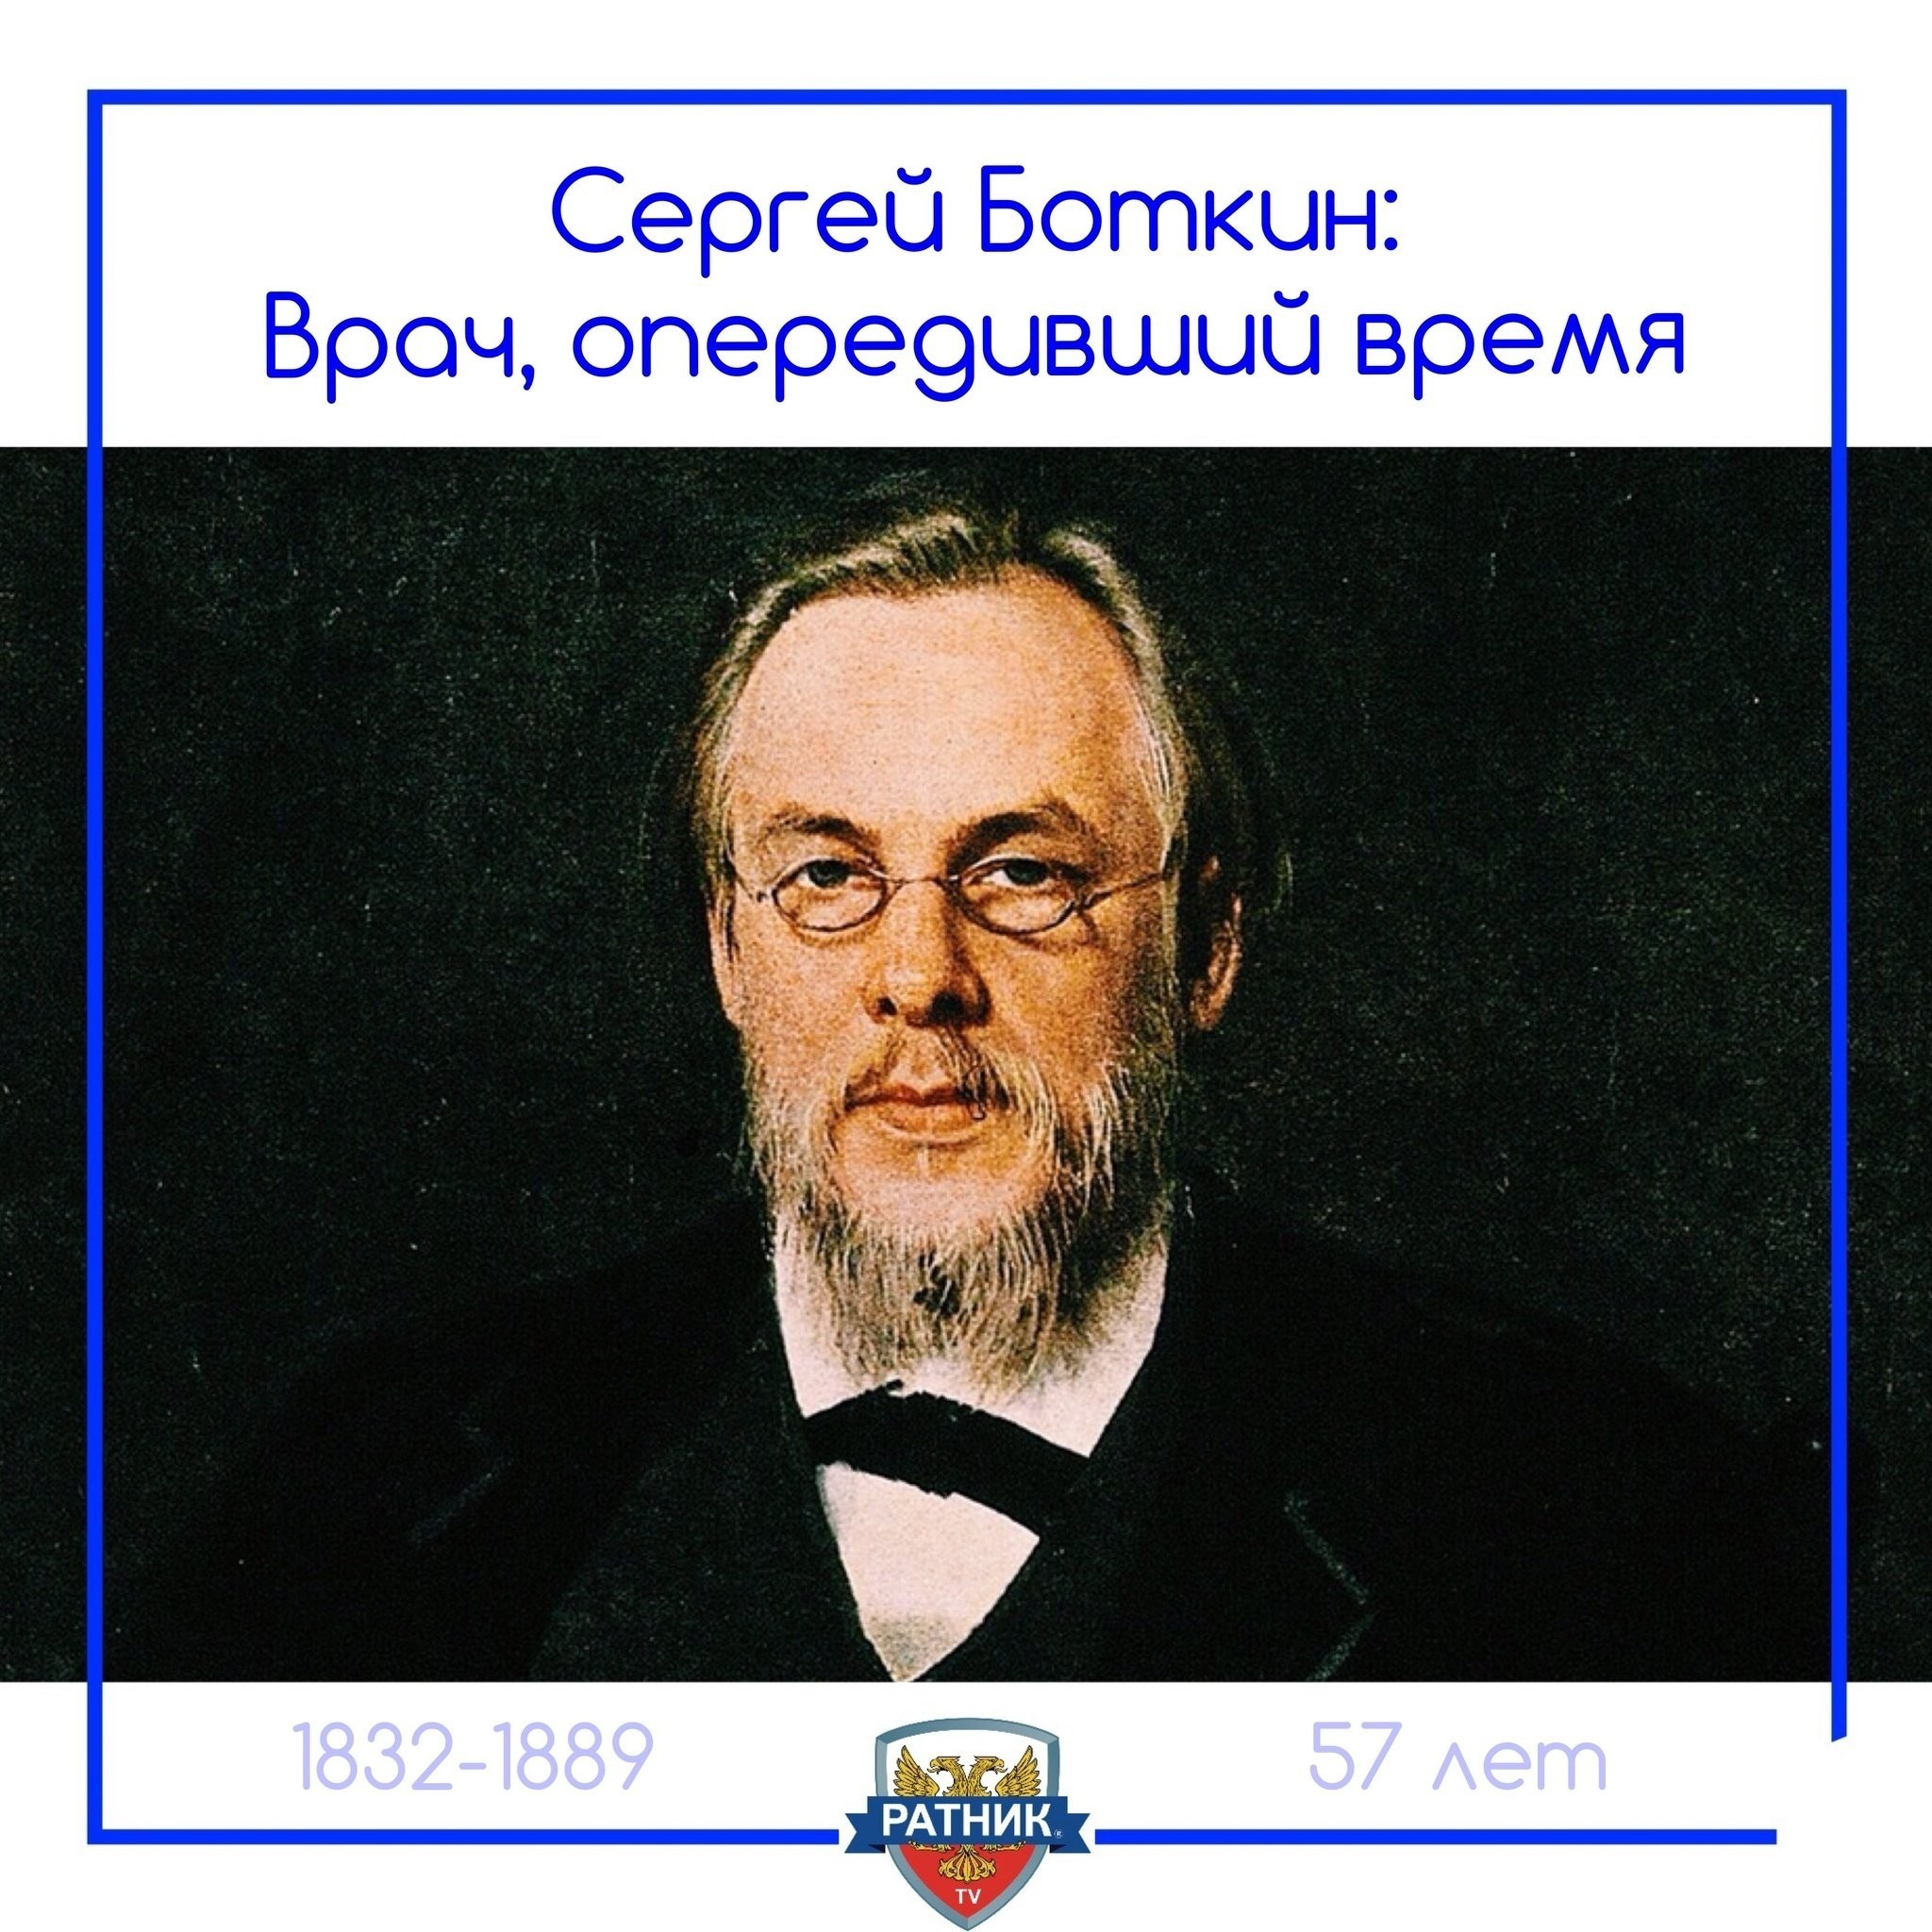 Сергей Петрович Боткин (1832 — 1889)